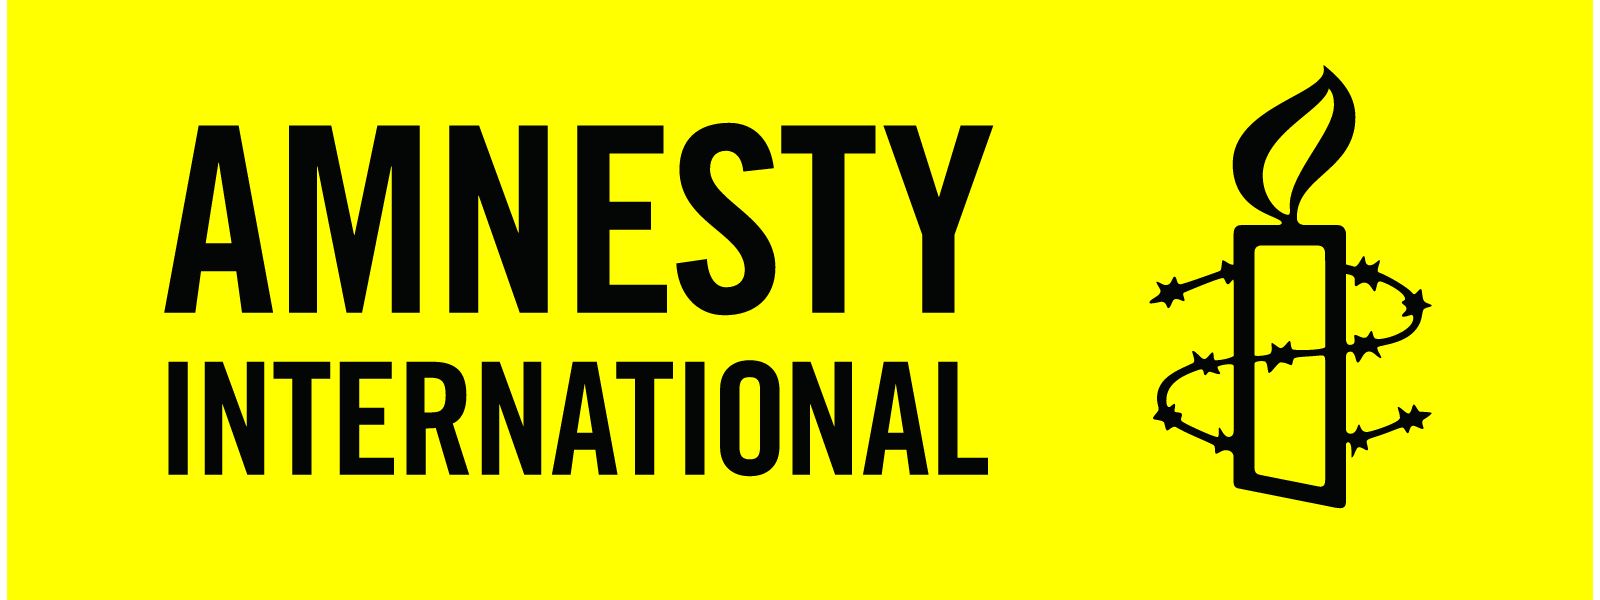 Sri Lanka must exercise restraint - Amnesty